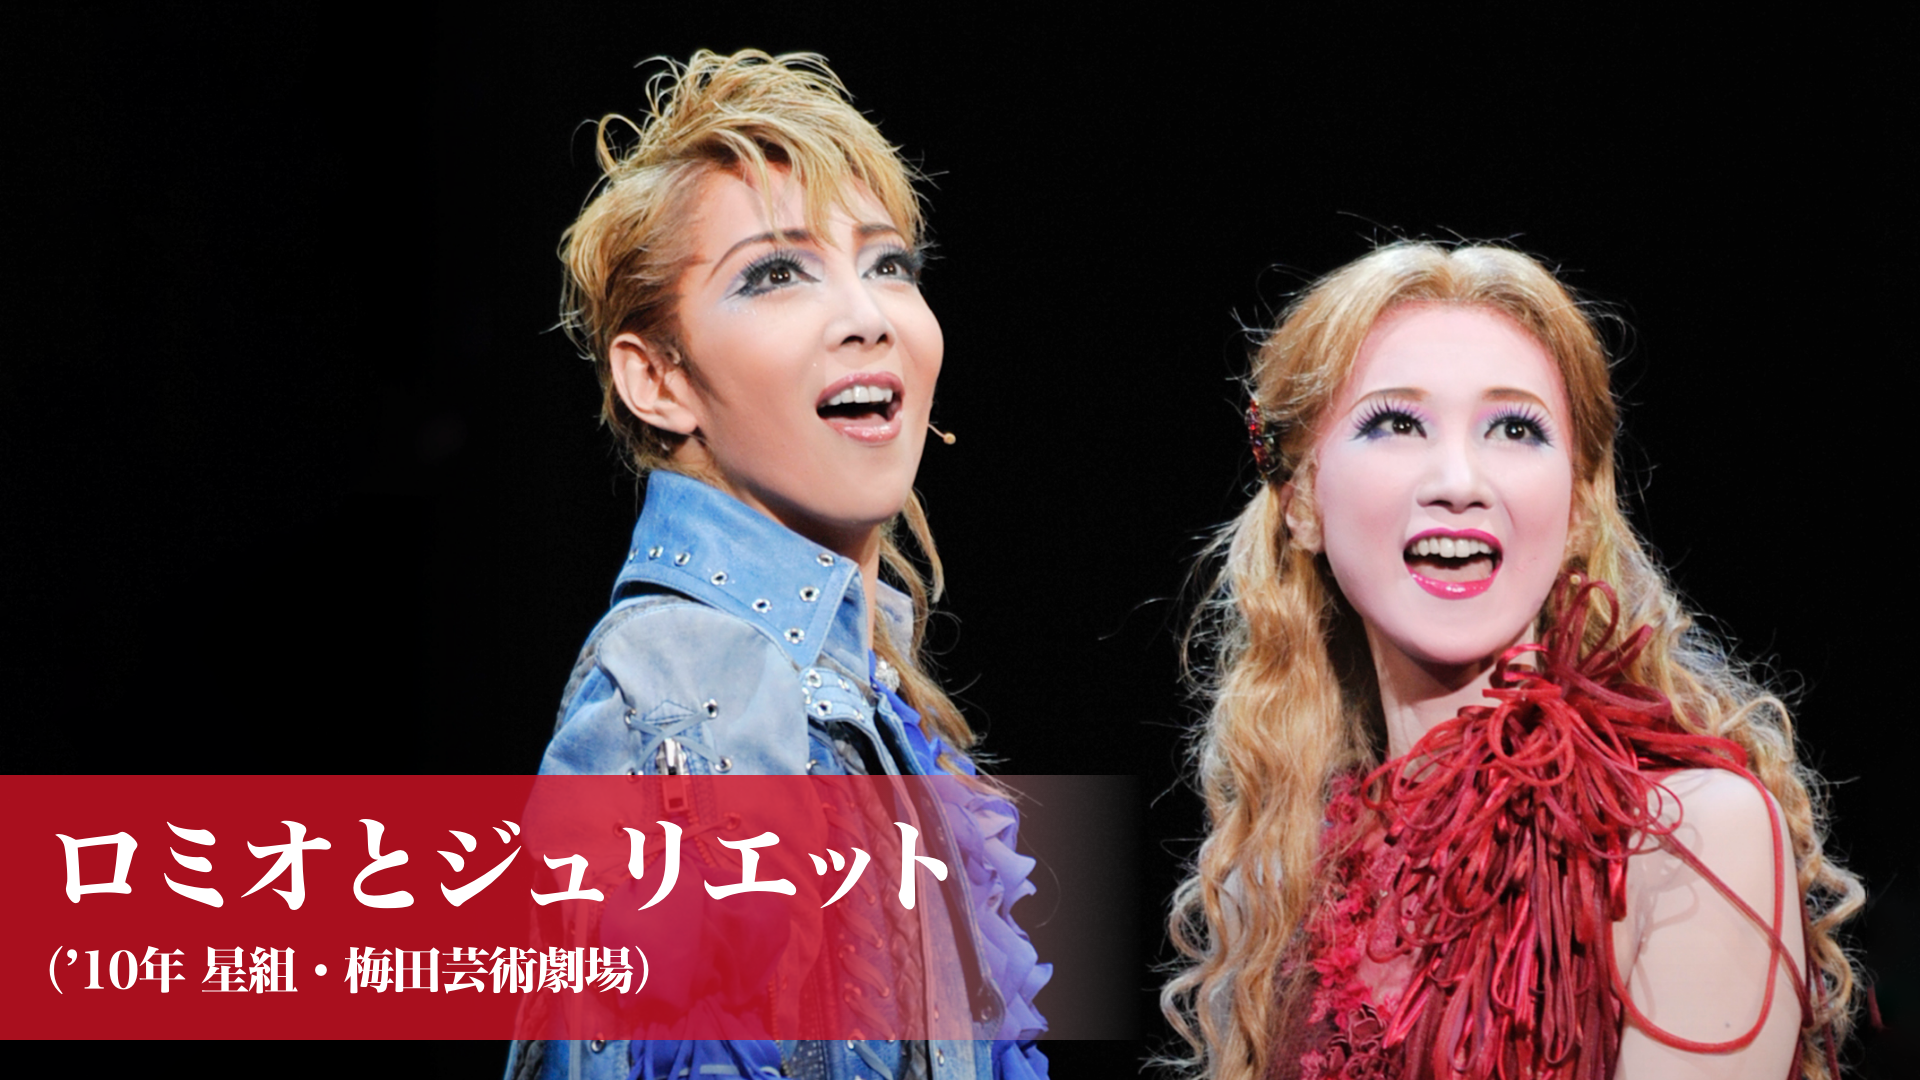 ロミオとジュリエット（'13年星組・東京・千秋楽）(舞台・演劇 / 2013 